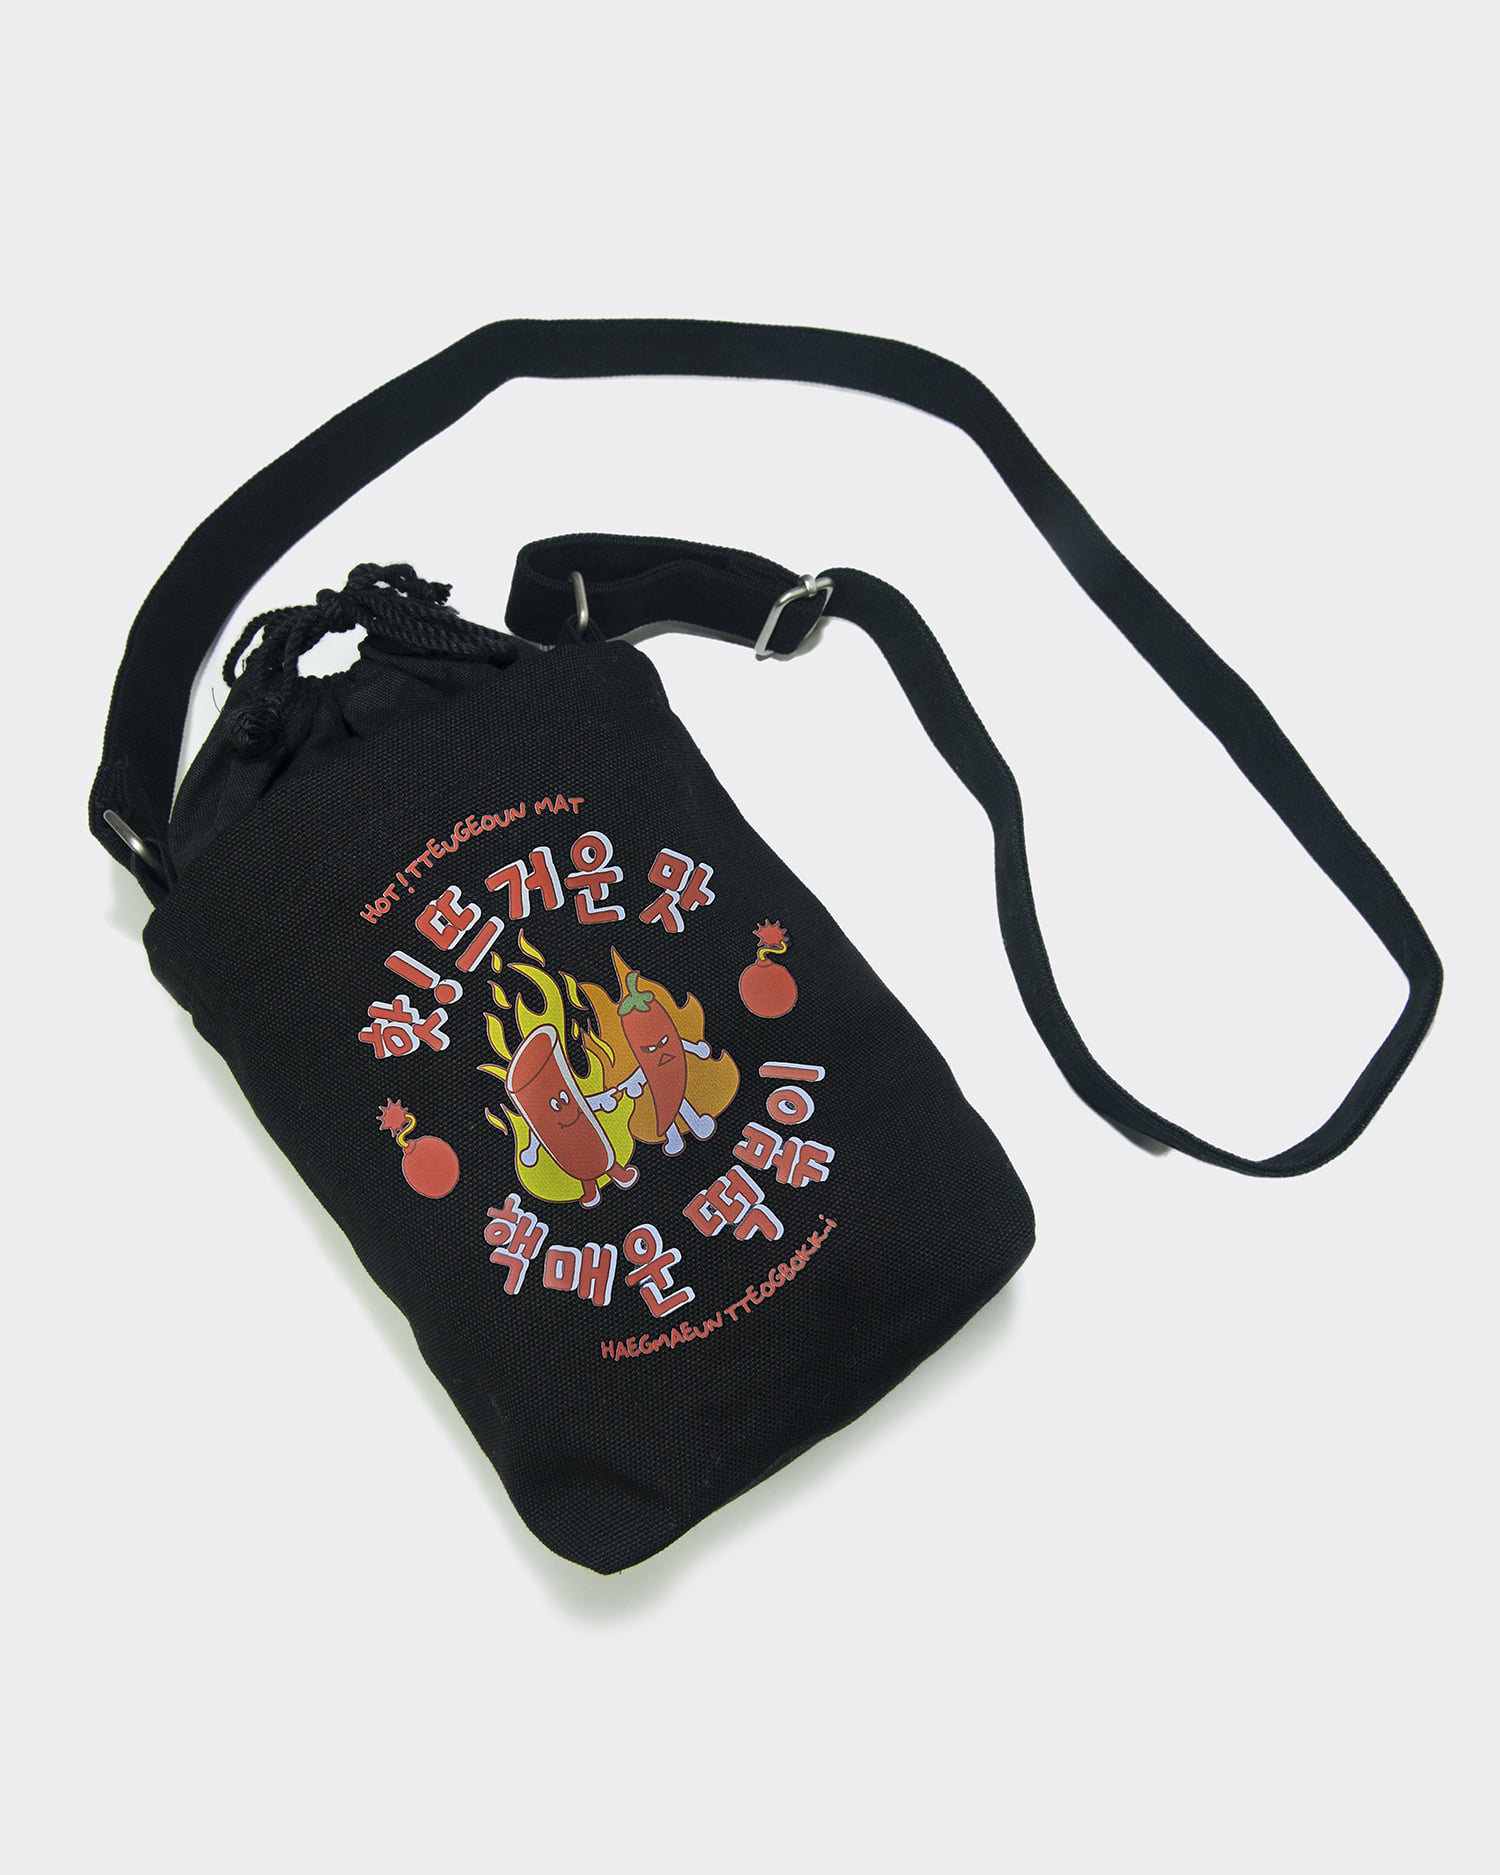 떡볶이 스몰 캔버스 숄더백 블랙 tteokbokki small canvas shoulder bag (Black)